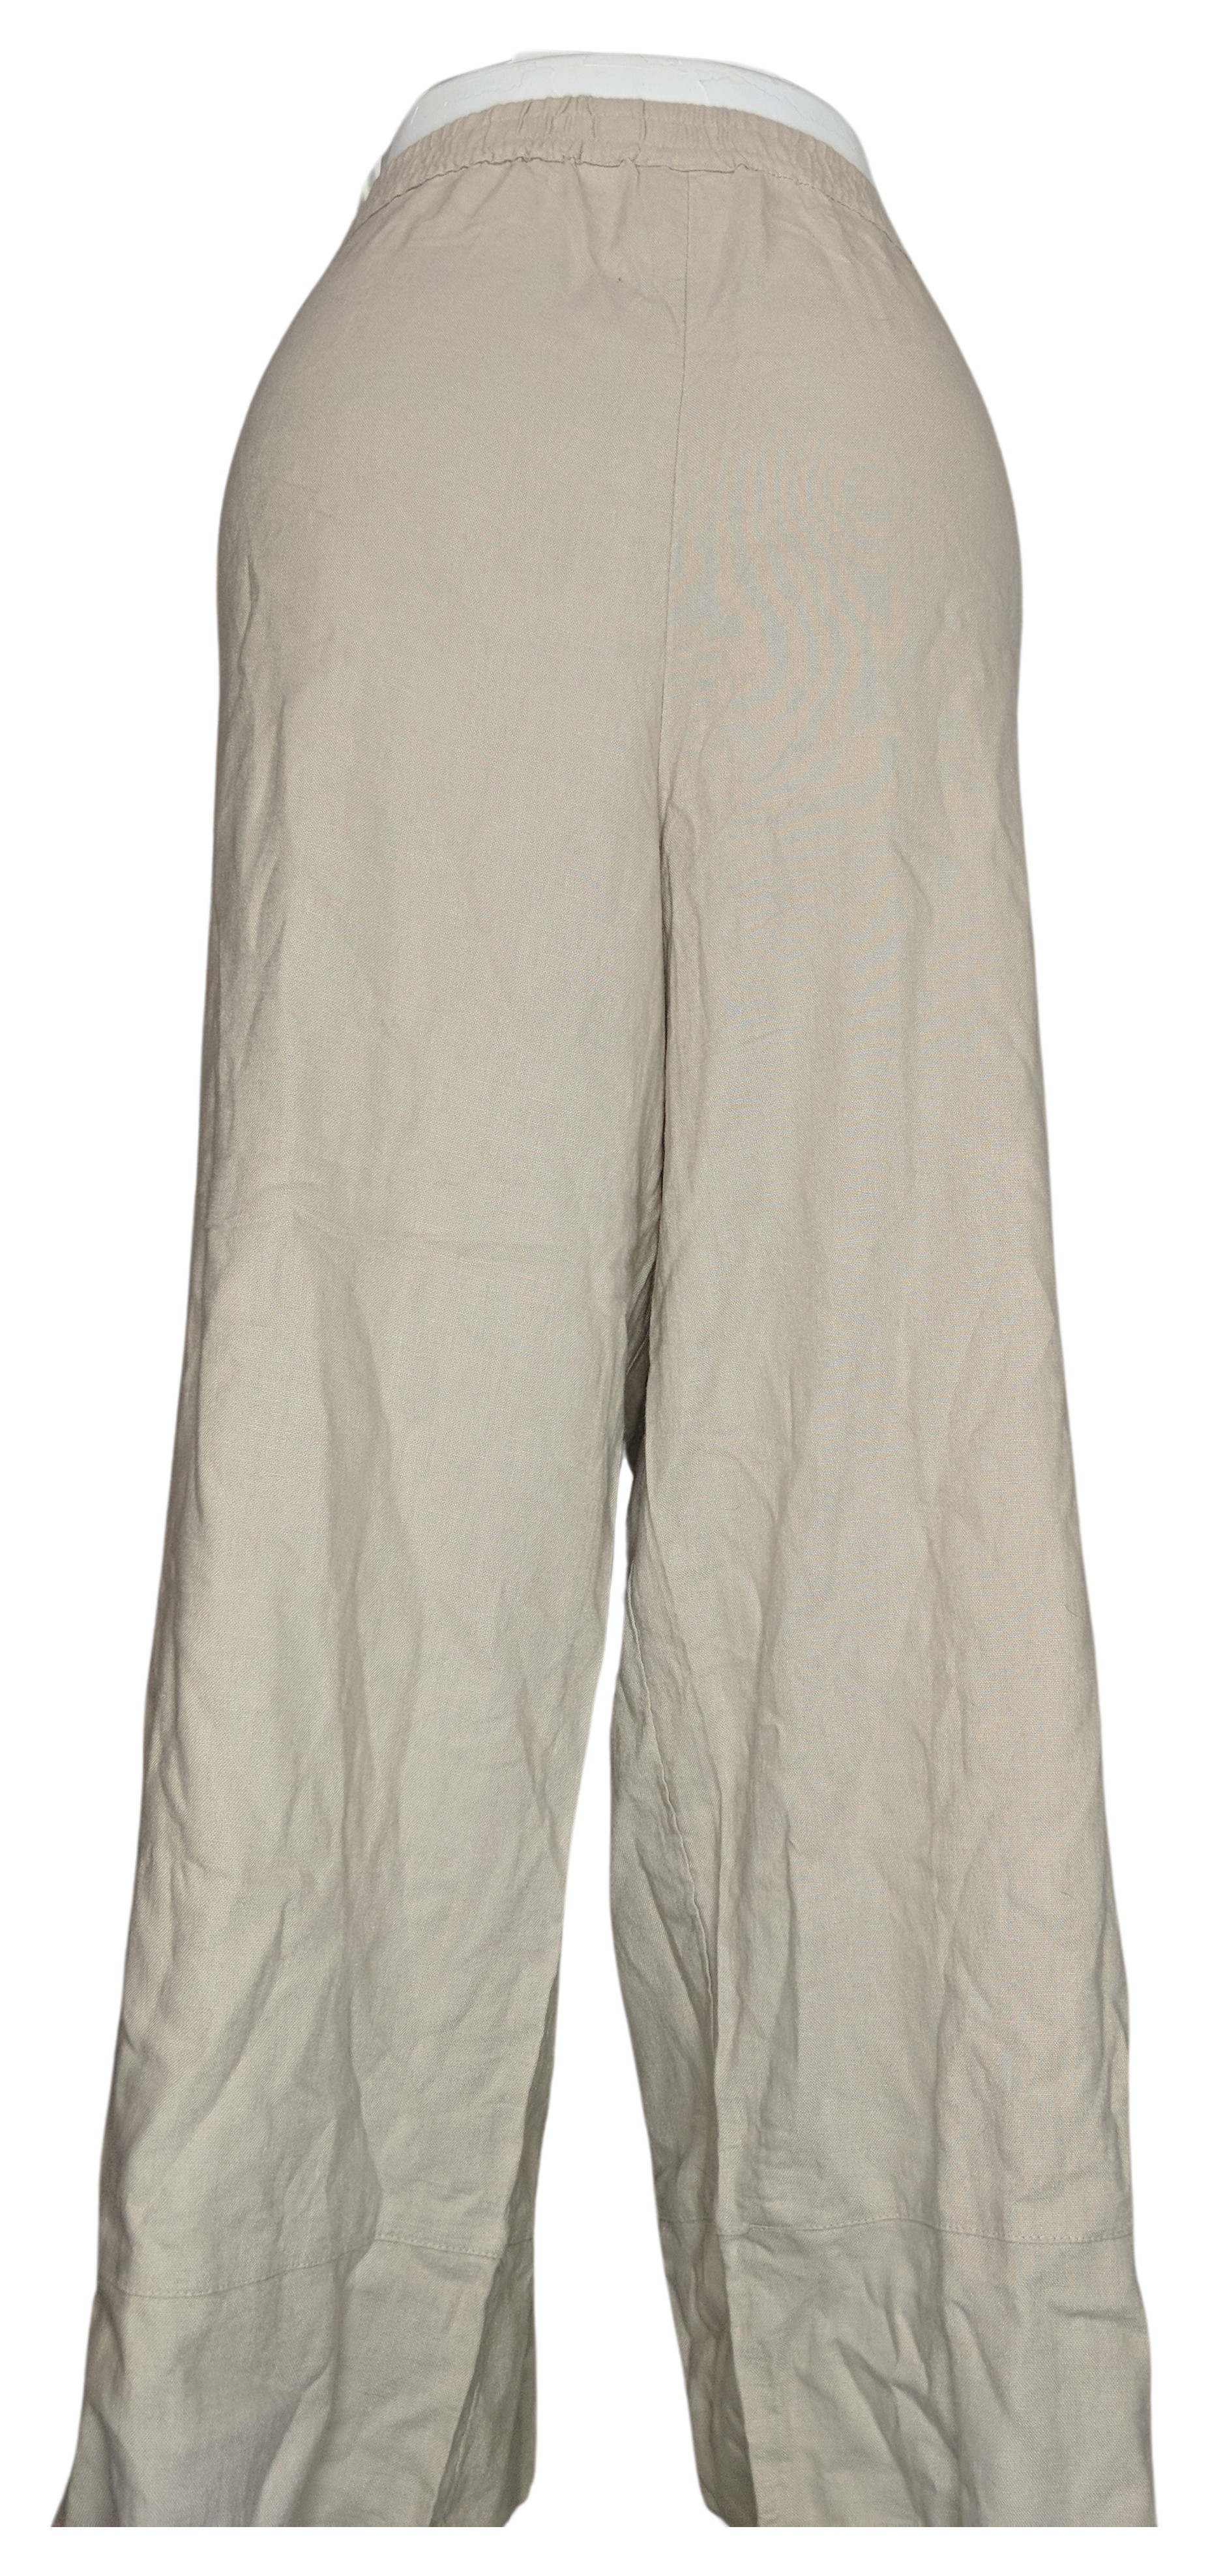 Denim & Co. Naturals Petite Linen Blend Side Women's Pants 2XP Beige